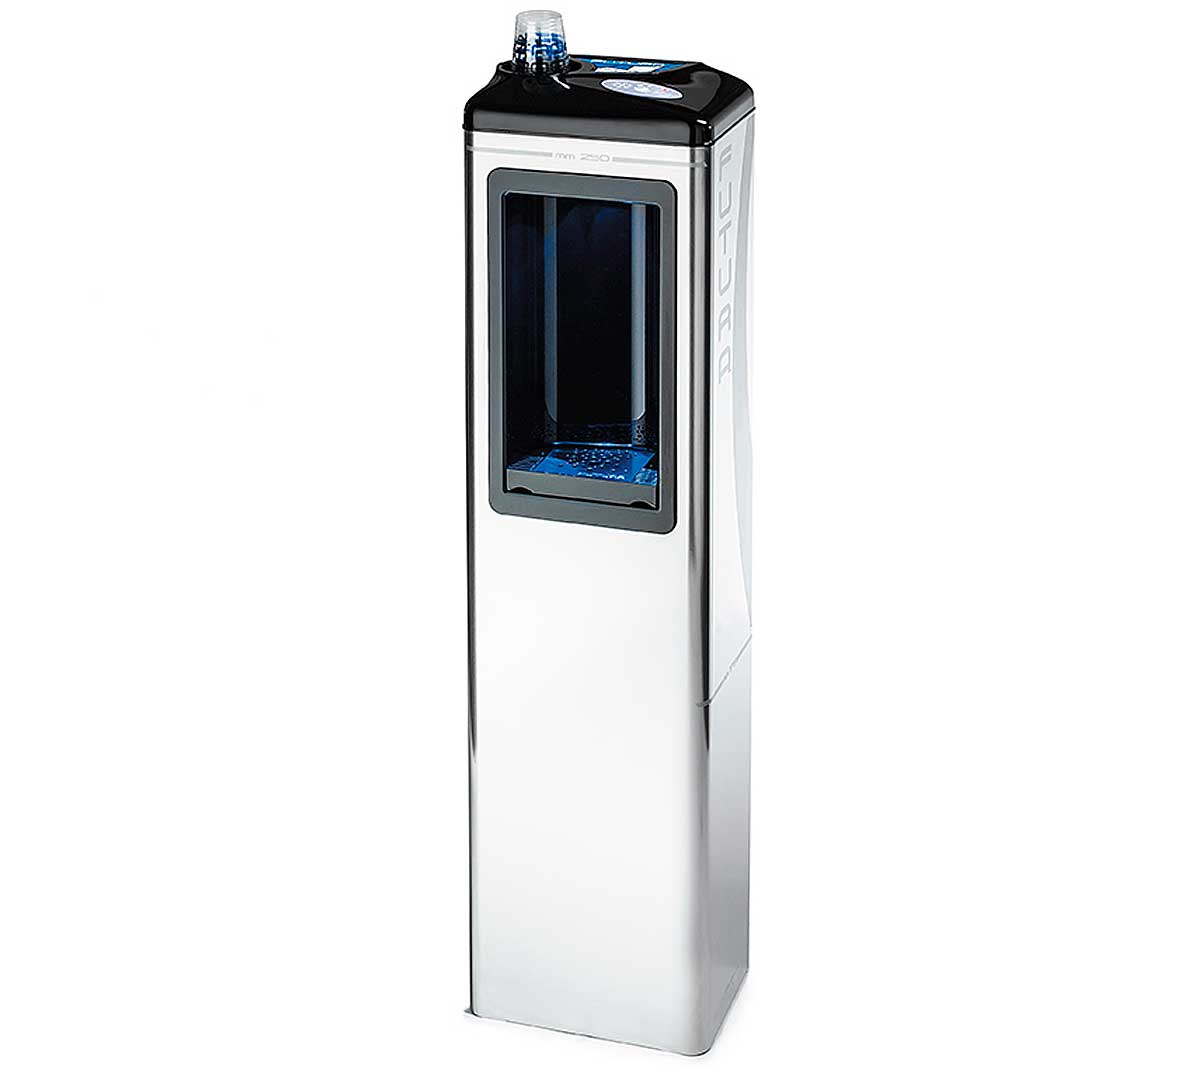 Аппарат для питьевой воды. Пурифайер CW-929c. Water Dispenser Люкс вода. Аппарат для газирования воды. Аппарат для охлаждения воды газированной.